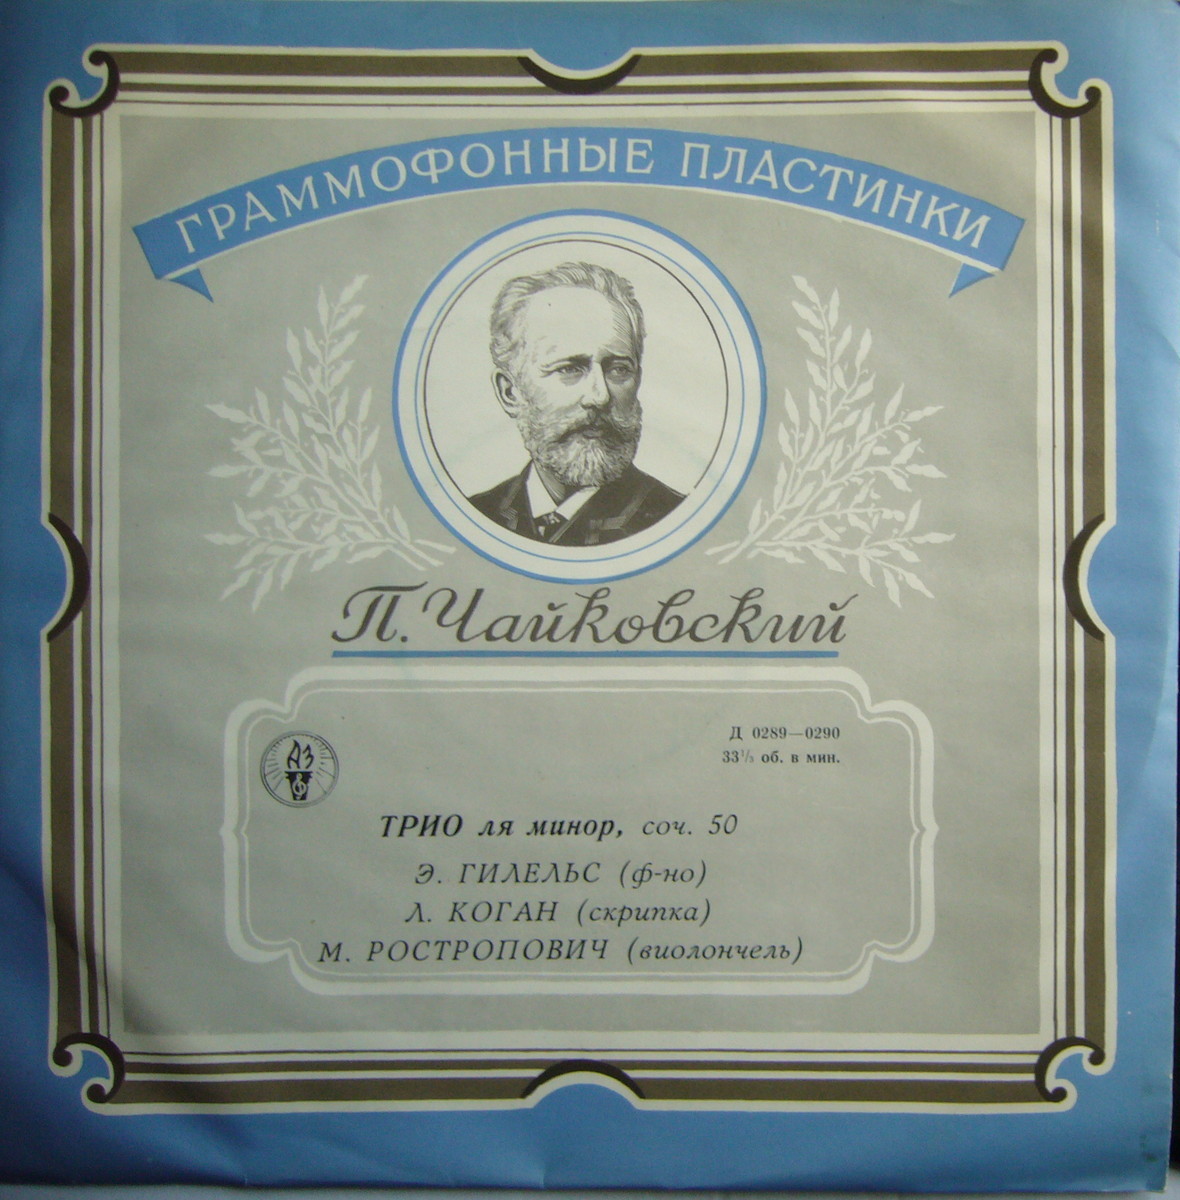 П. ЧАЙКОВСКИЙ (1840–1893): Трио ля минор, соч. 50 «Памяти великого художника»